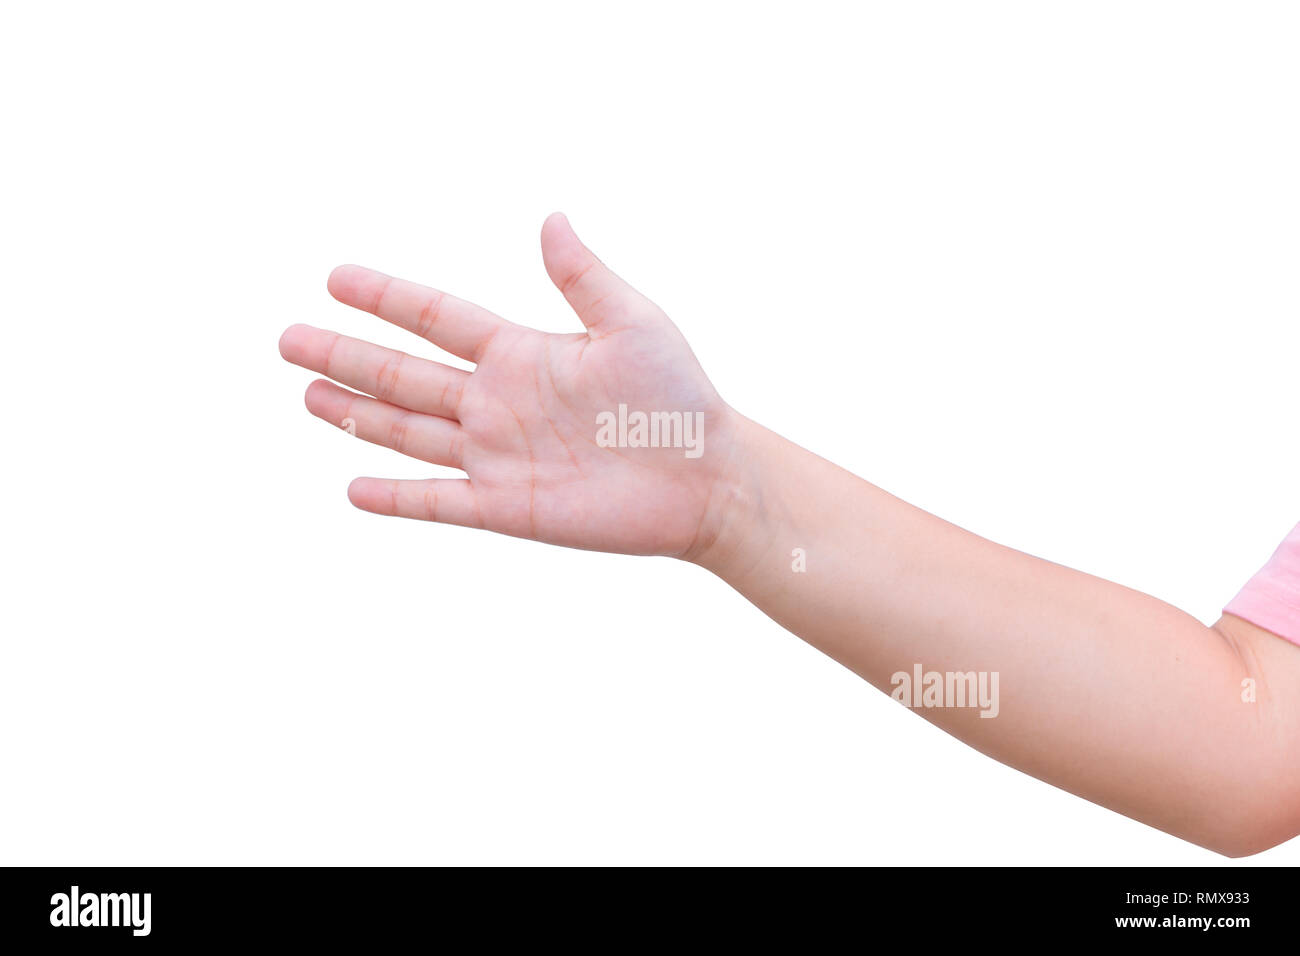 Ragazza mano grassa aprire palm isolati su sfondo bianco Foto Stock